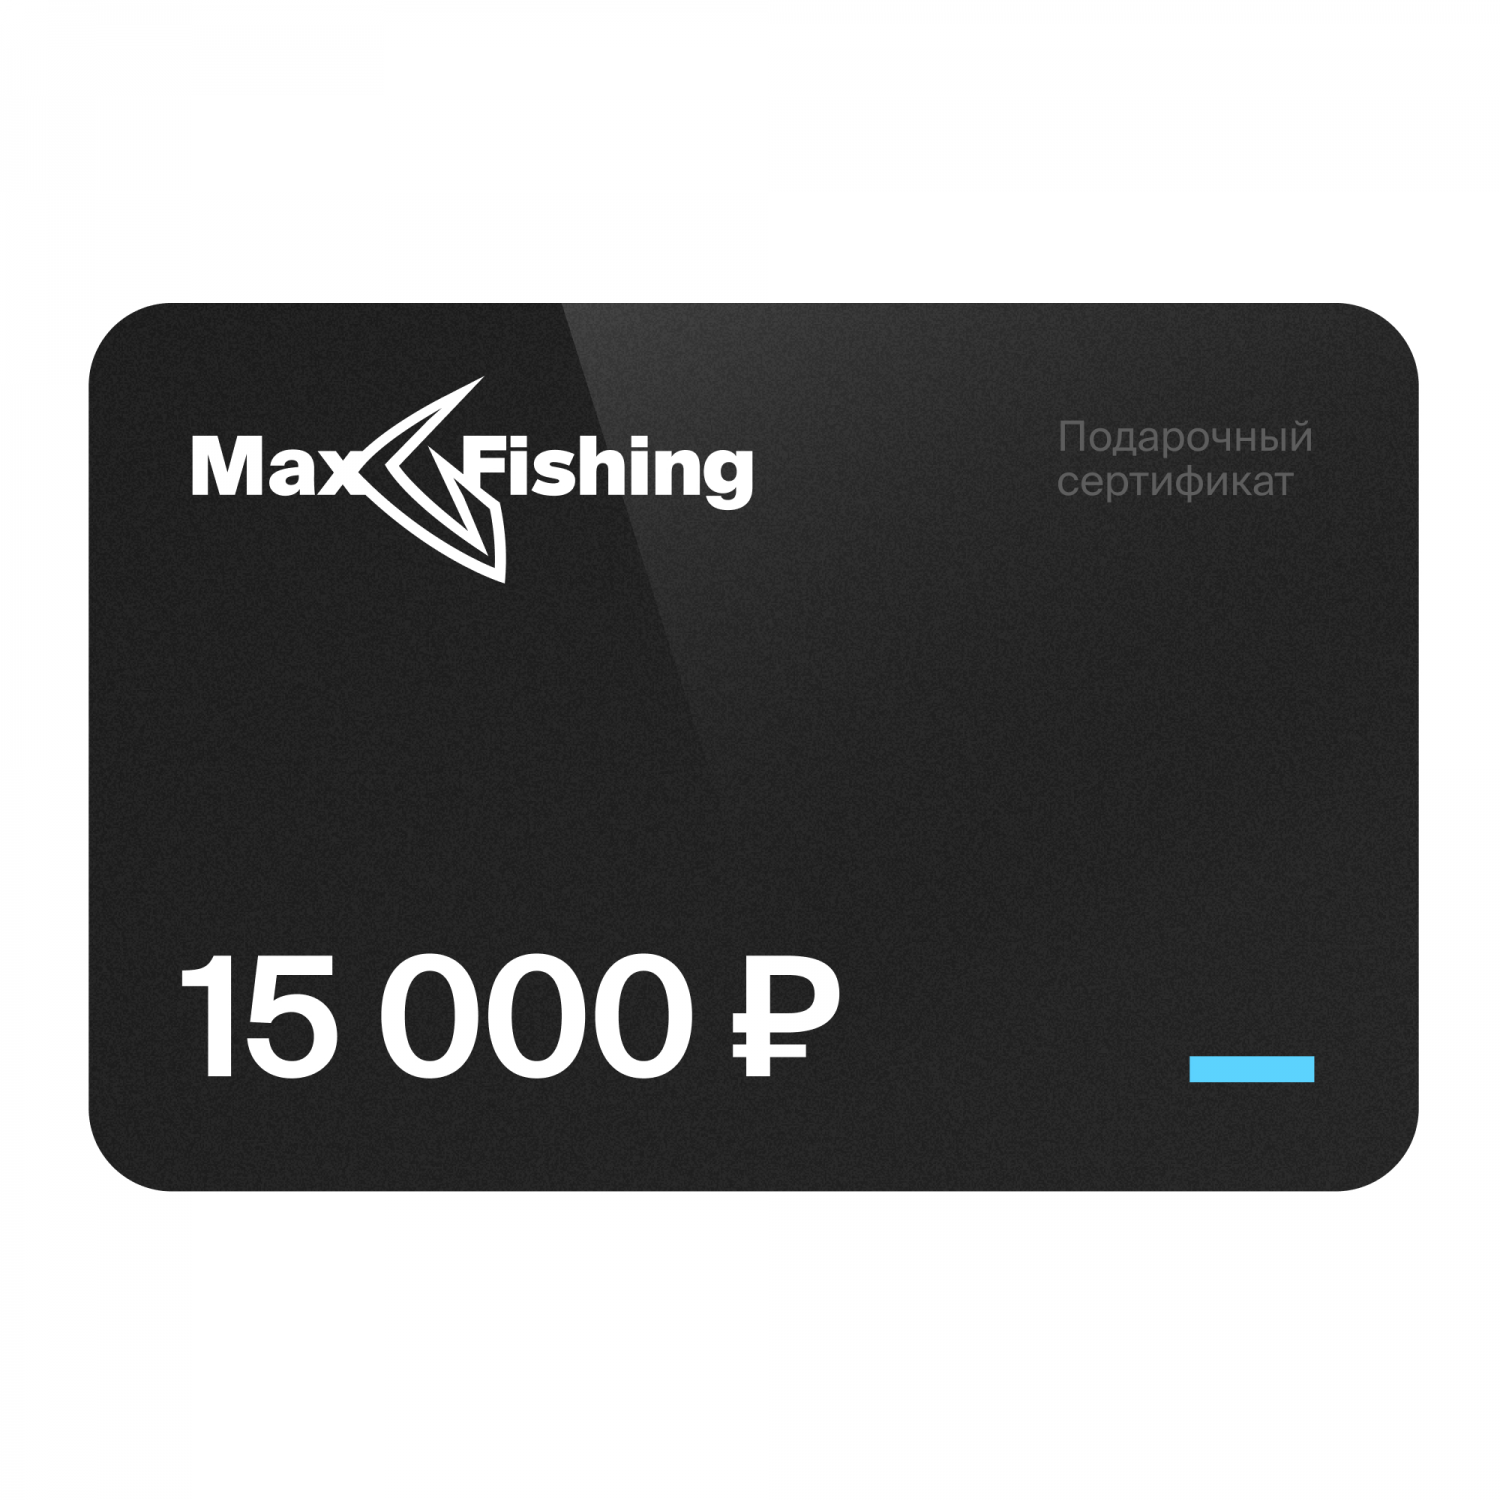 Подарочный сертификат MaxFishing 15 000 ₽ подарочный сертификат mr right на 5 000 рублей